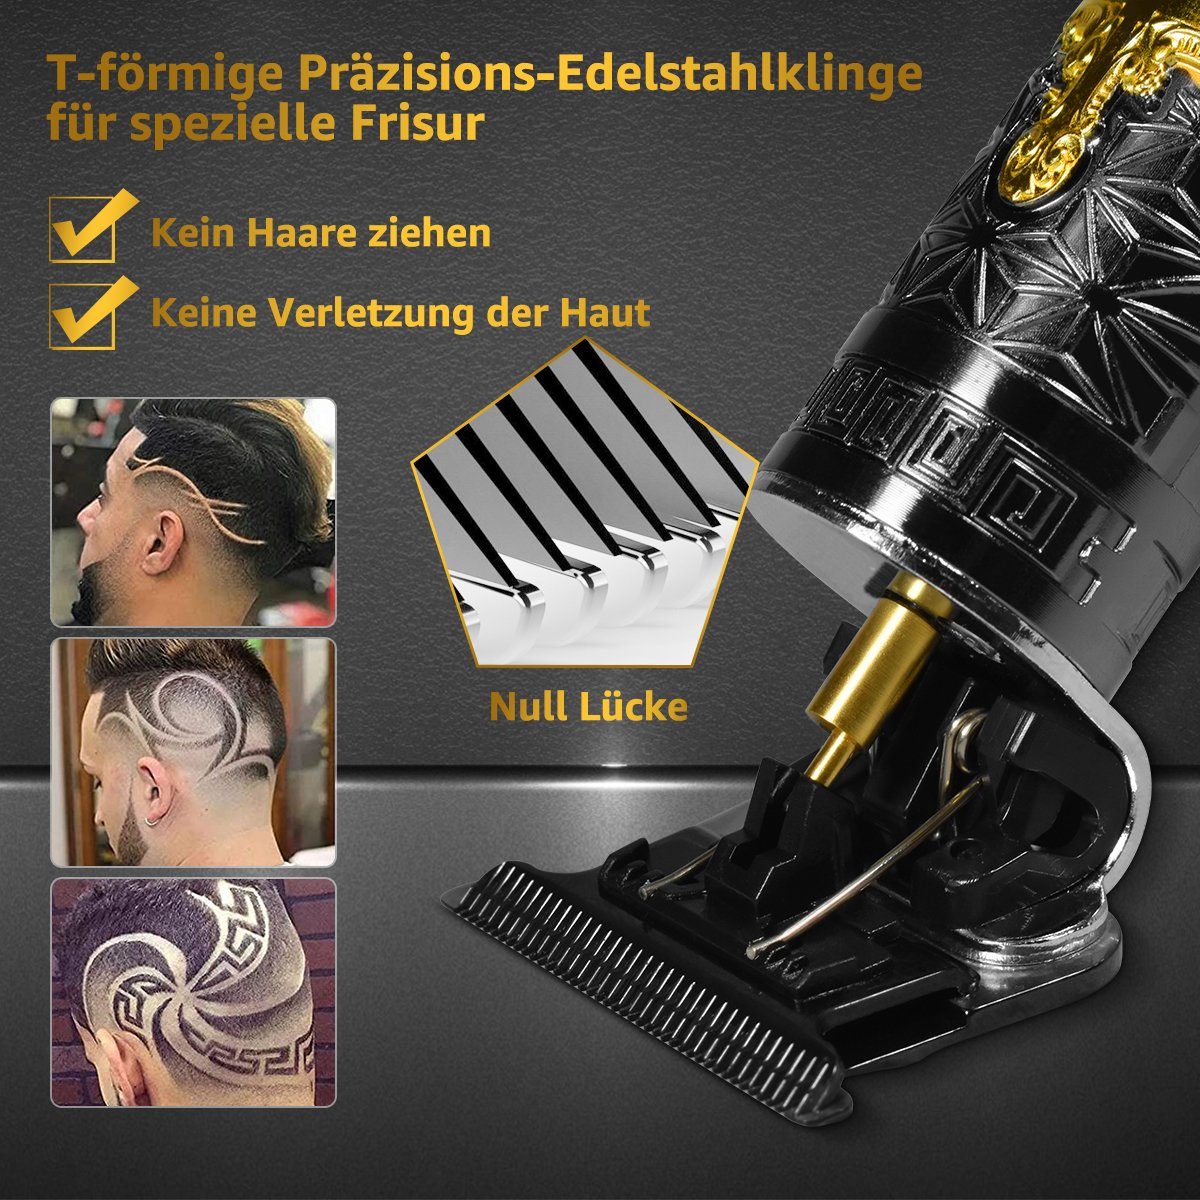 Elektrorasierer,Haarschneider Professional und und Rasierset LifeImpree Bartschneider, Haarschneider Haar-